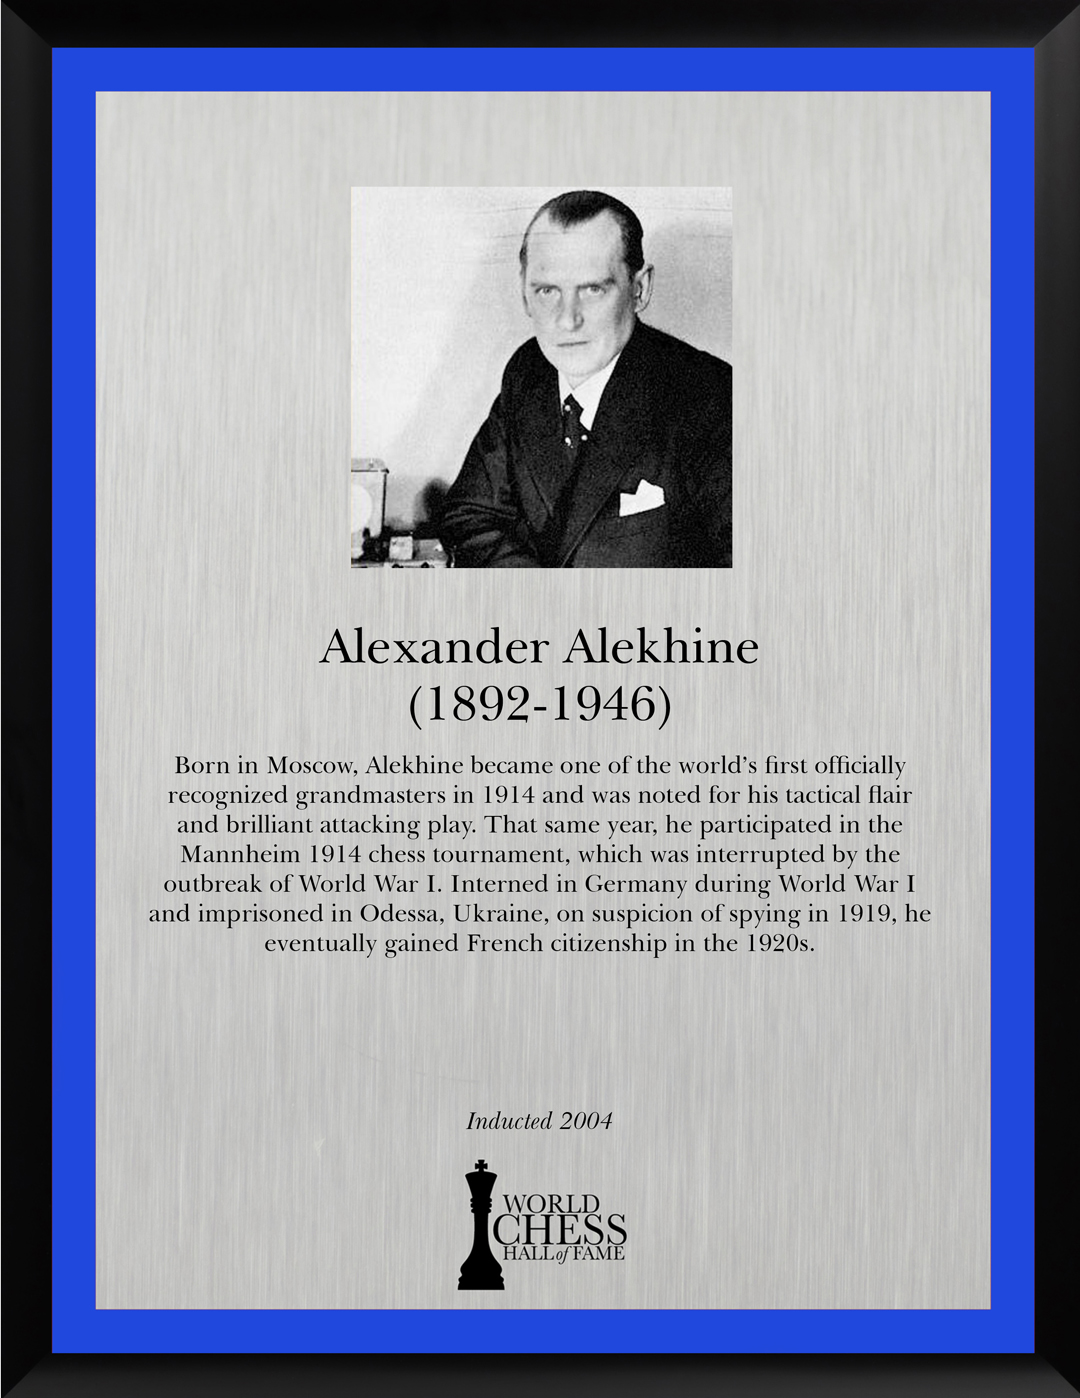 Alexander Alekhine Facts for Kids